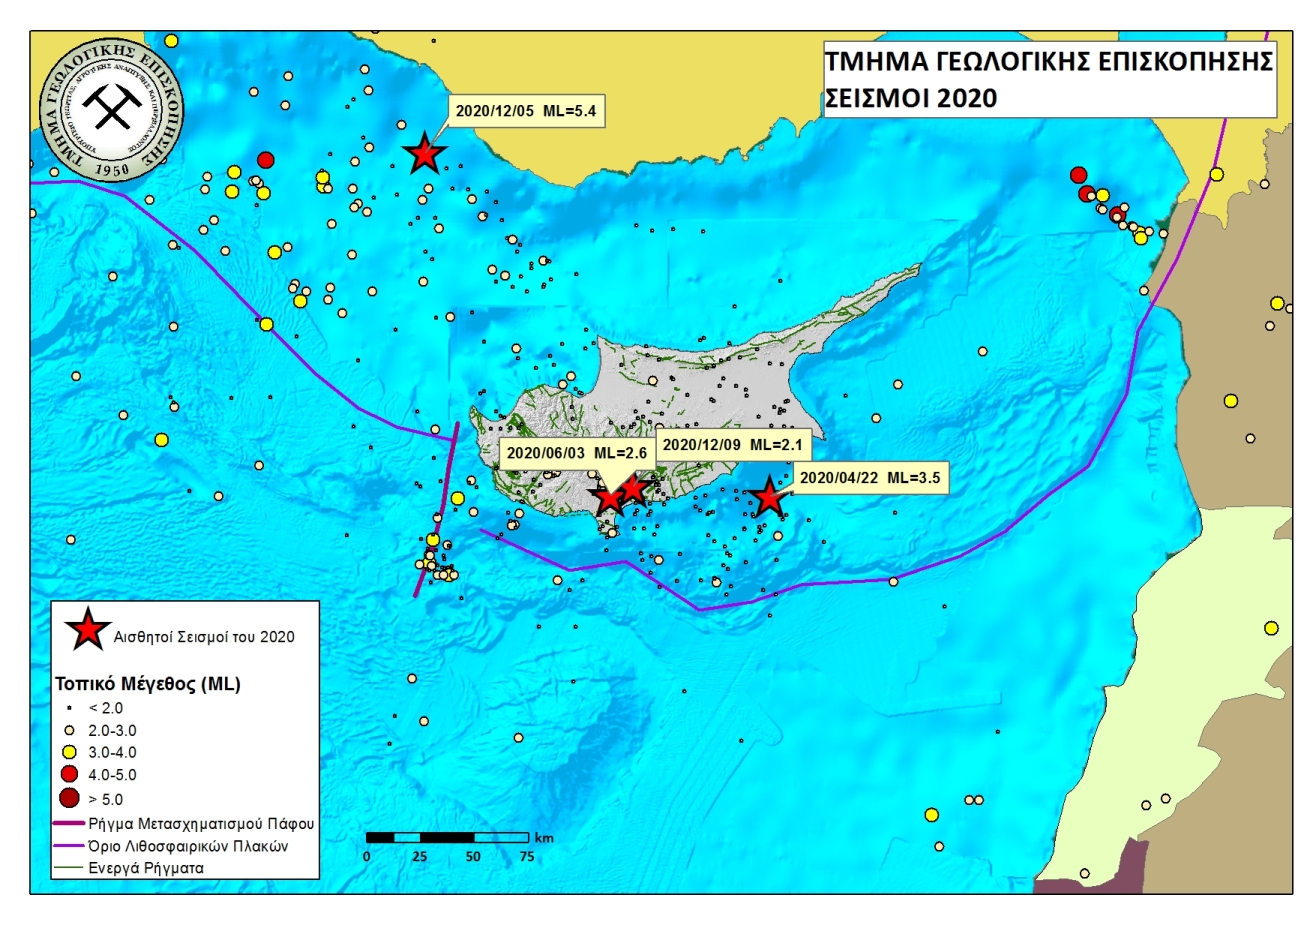 Χωρική κατανομή, ως προς το μέγεθος, των τοπικών σεισμών της Κύπρου που έχουν καταγραφεί από το Σεισμολογικό Κέντρο του Τμήματος Γεωλογικής Επισκόπησης κατά το έτος 2020